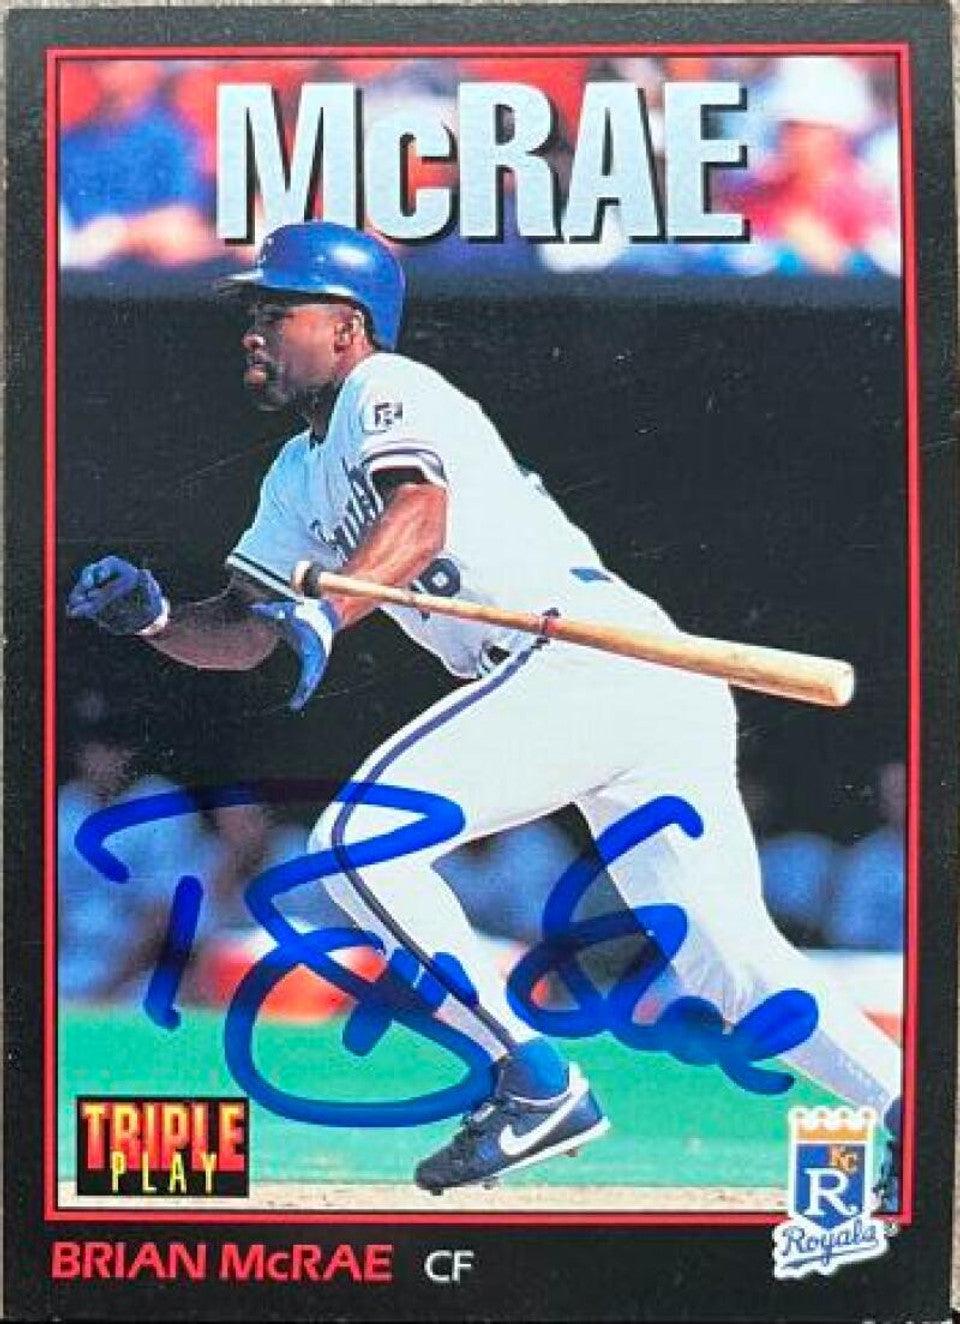 Brian McRae Signed 1993 Triple Play Baseball Card - Kansas City Royals - PastPros